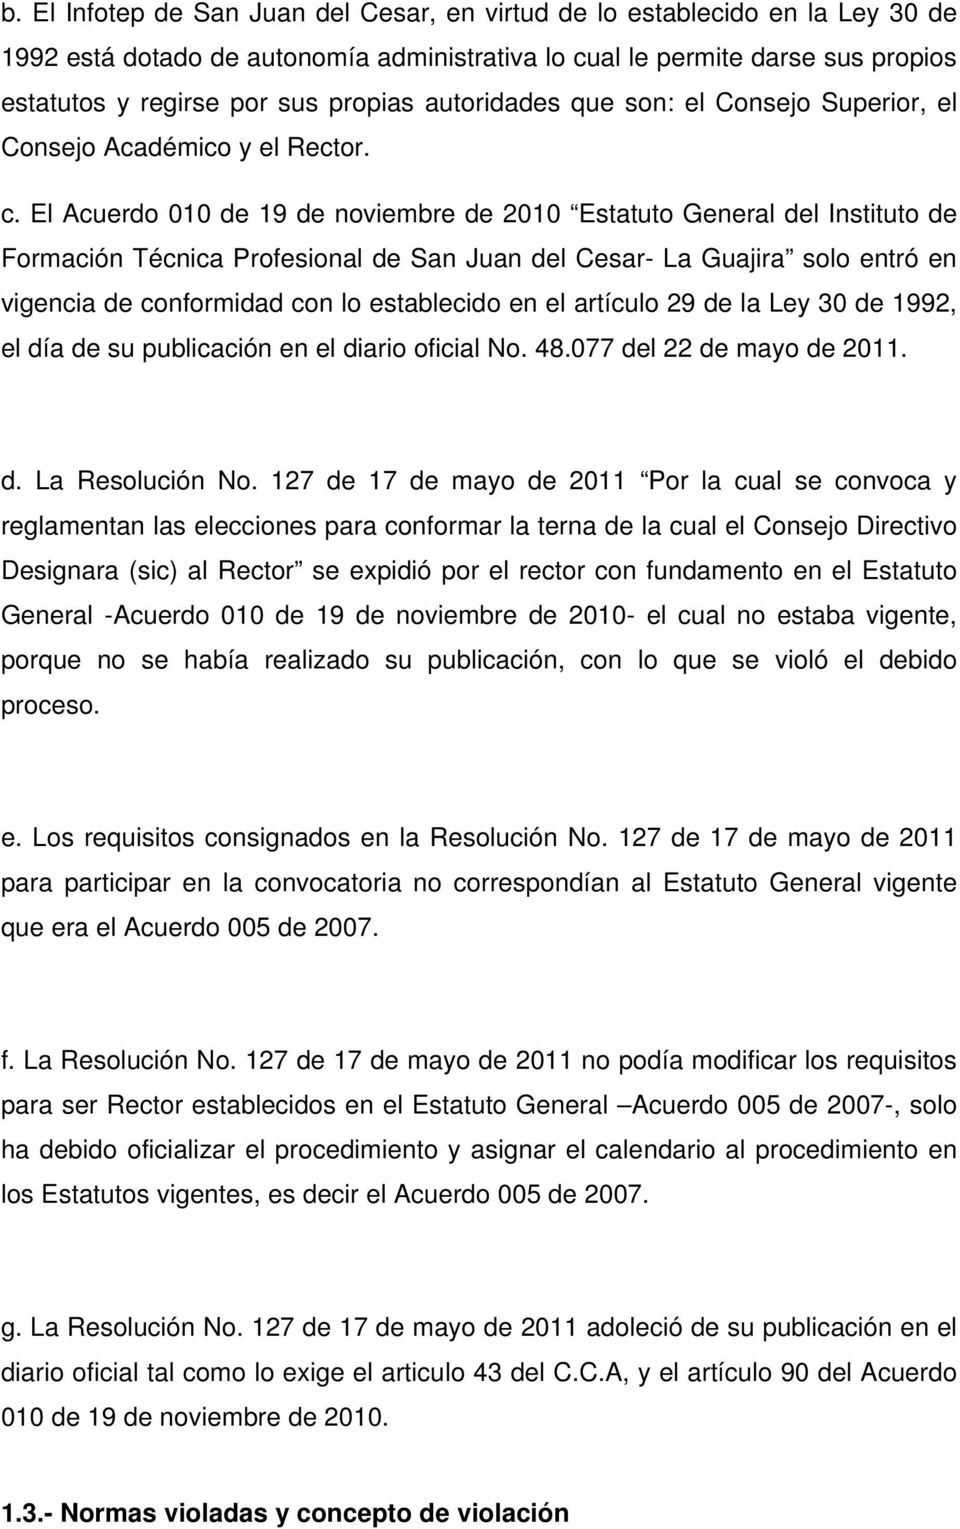 El Acuerdo 010 de 19 de noviembre de 2010 Estatuto General del Instituto de Formación Técnica Profesional de San Juan del Cesar- La Guajira solo entró en vigencia de conformidad con lo establecido en